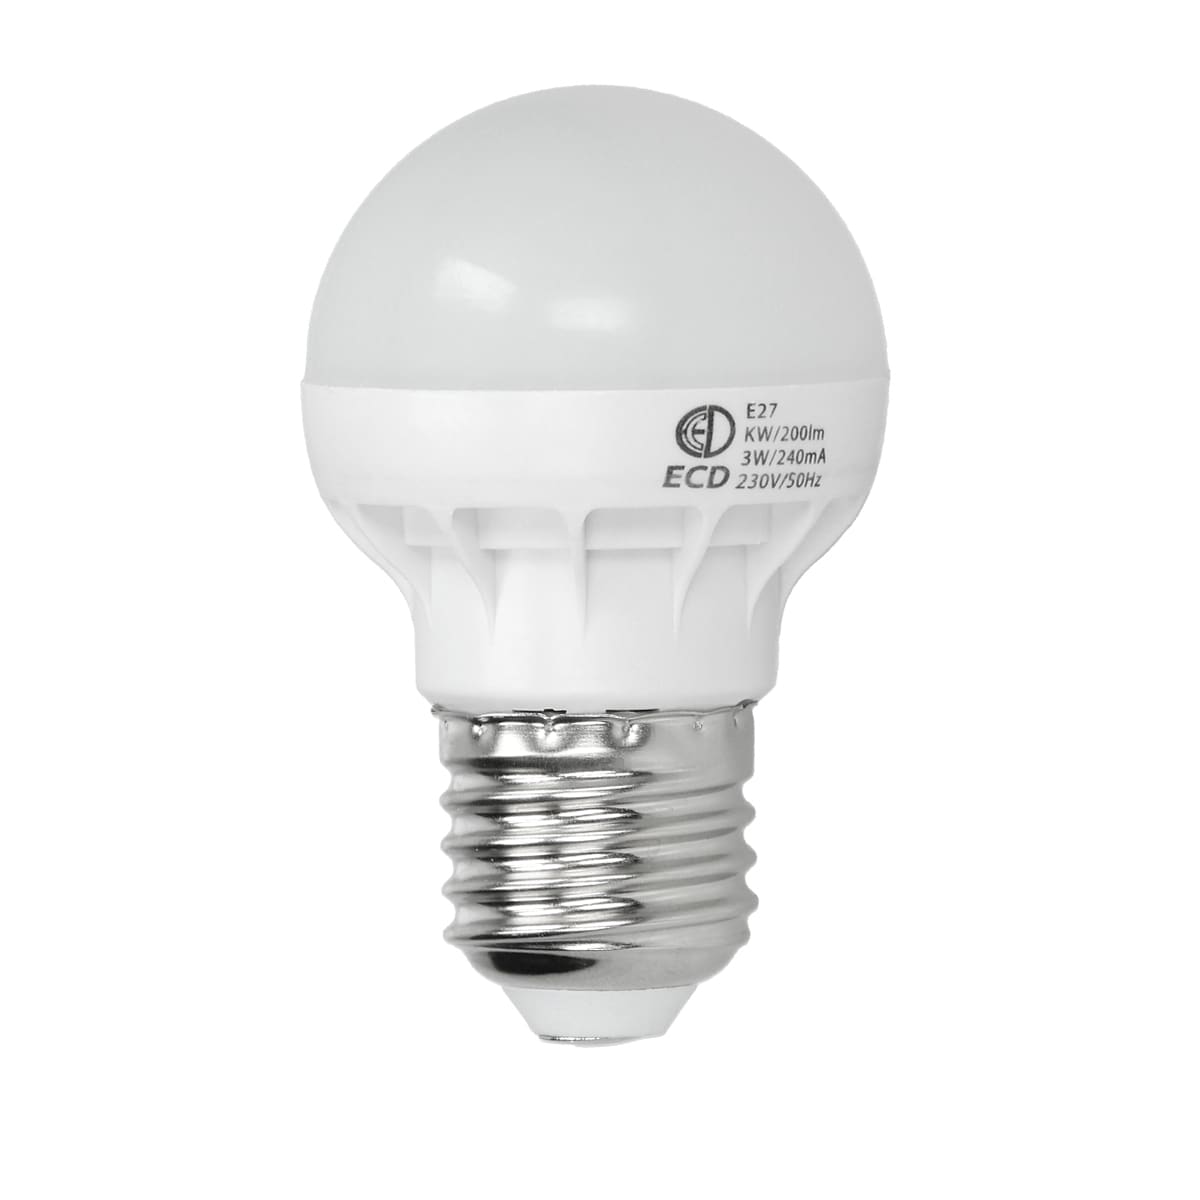 stk E27 LED pære energisparepære pære watt kold hvid | Elgiganten